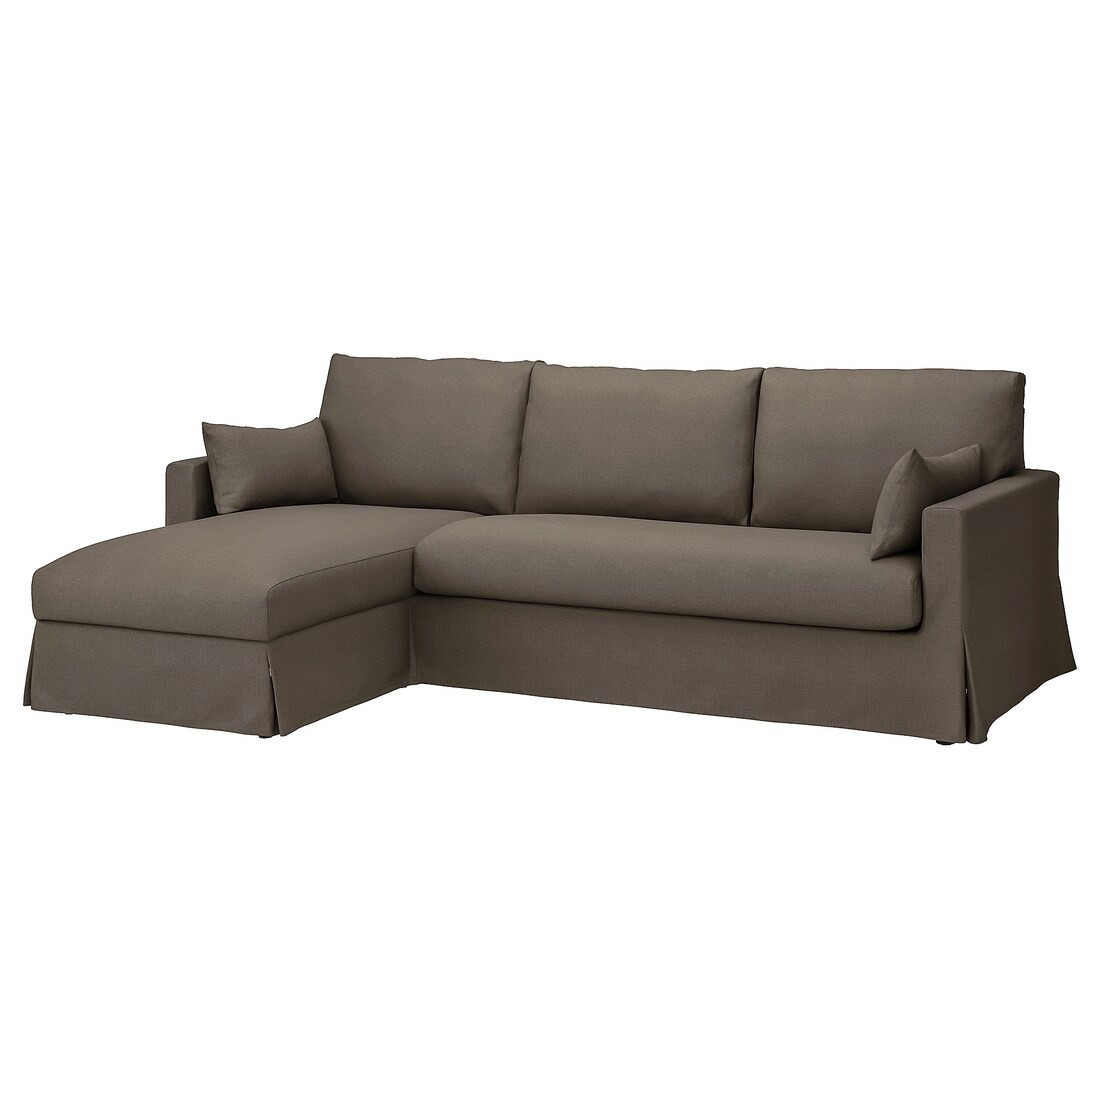 HYLTARP 3-місний диван з козеткою, зліва, Гранат сіро-коричневий